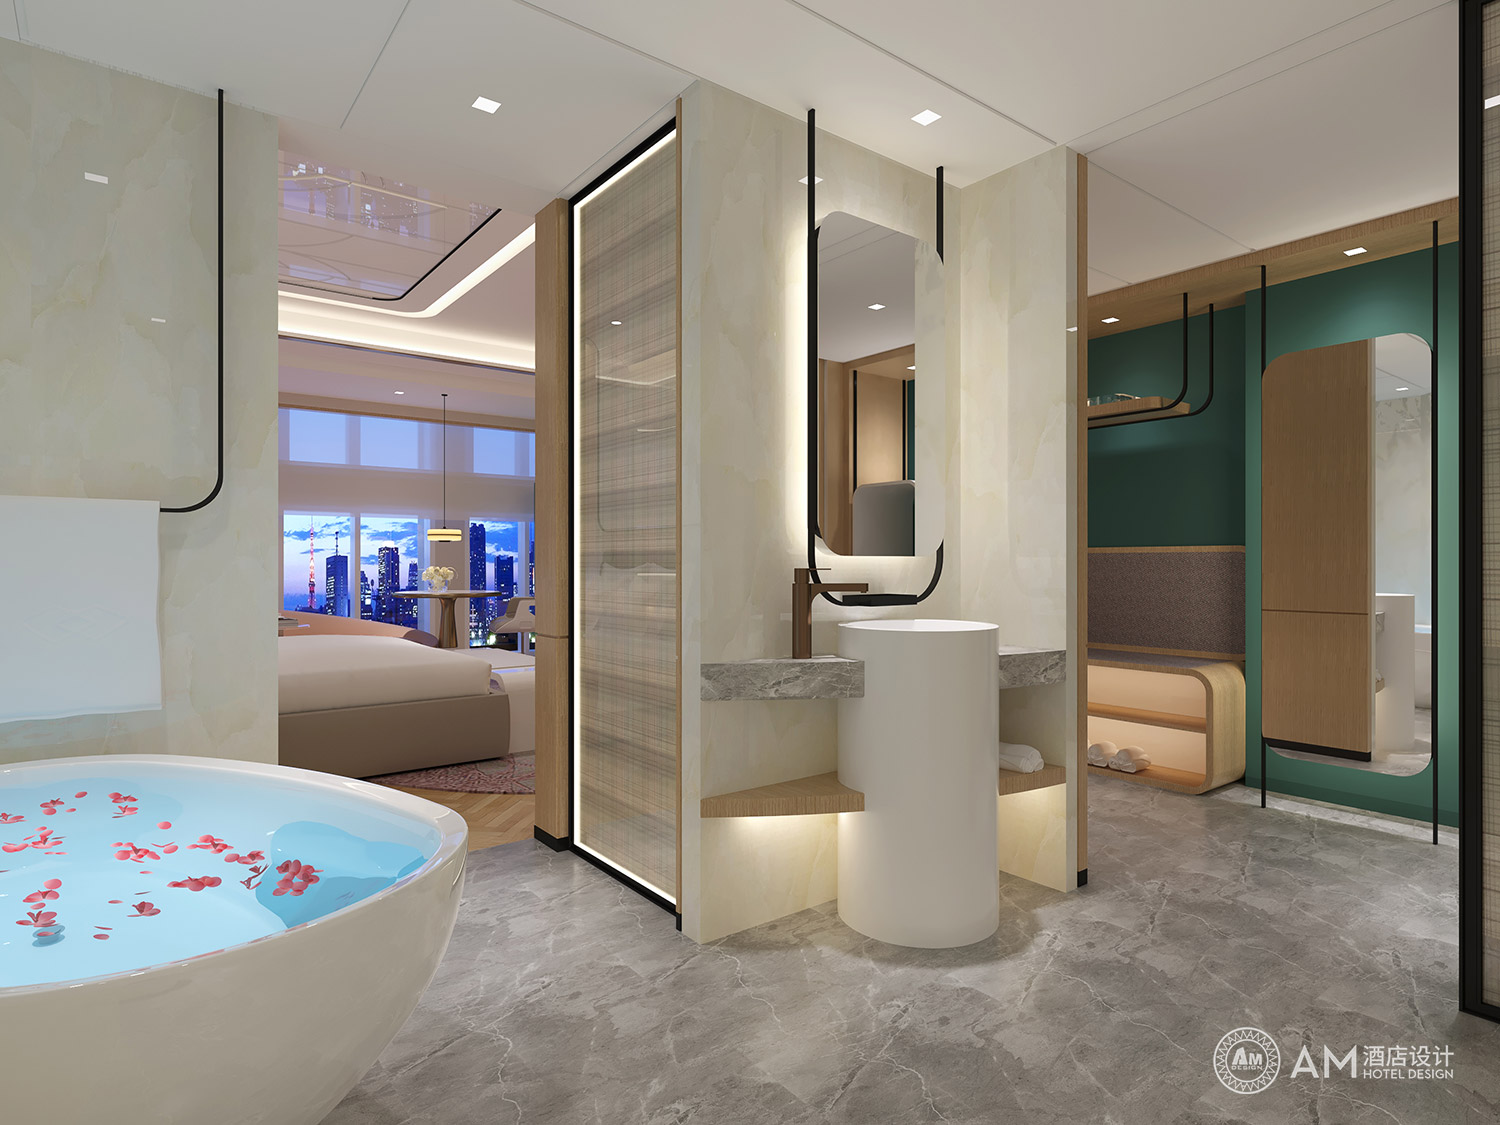 AM DESIGN | Xi'an Yuelai Boutique Hotel Guest Room Toilet Design